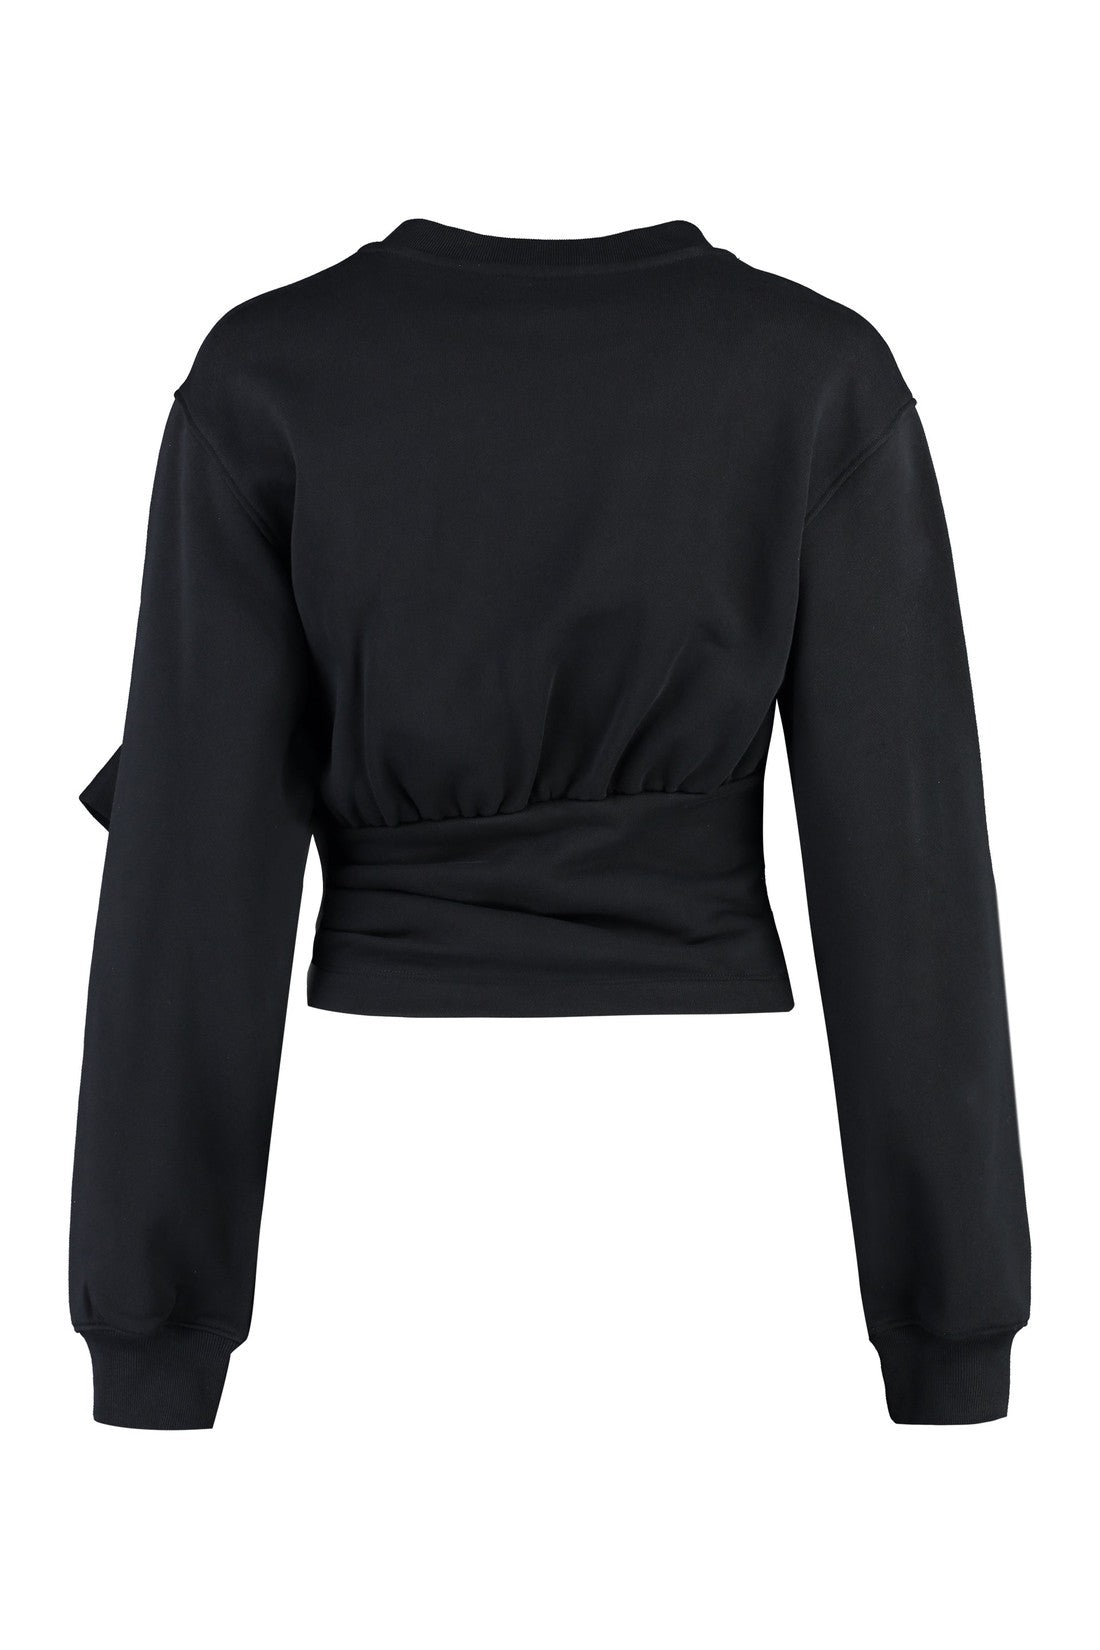 Moschino-OUTLET-SALE-Logo sweatshirt-ARCHIVIST